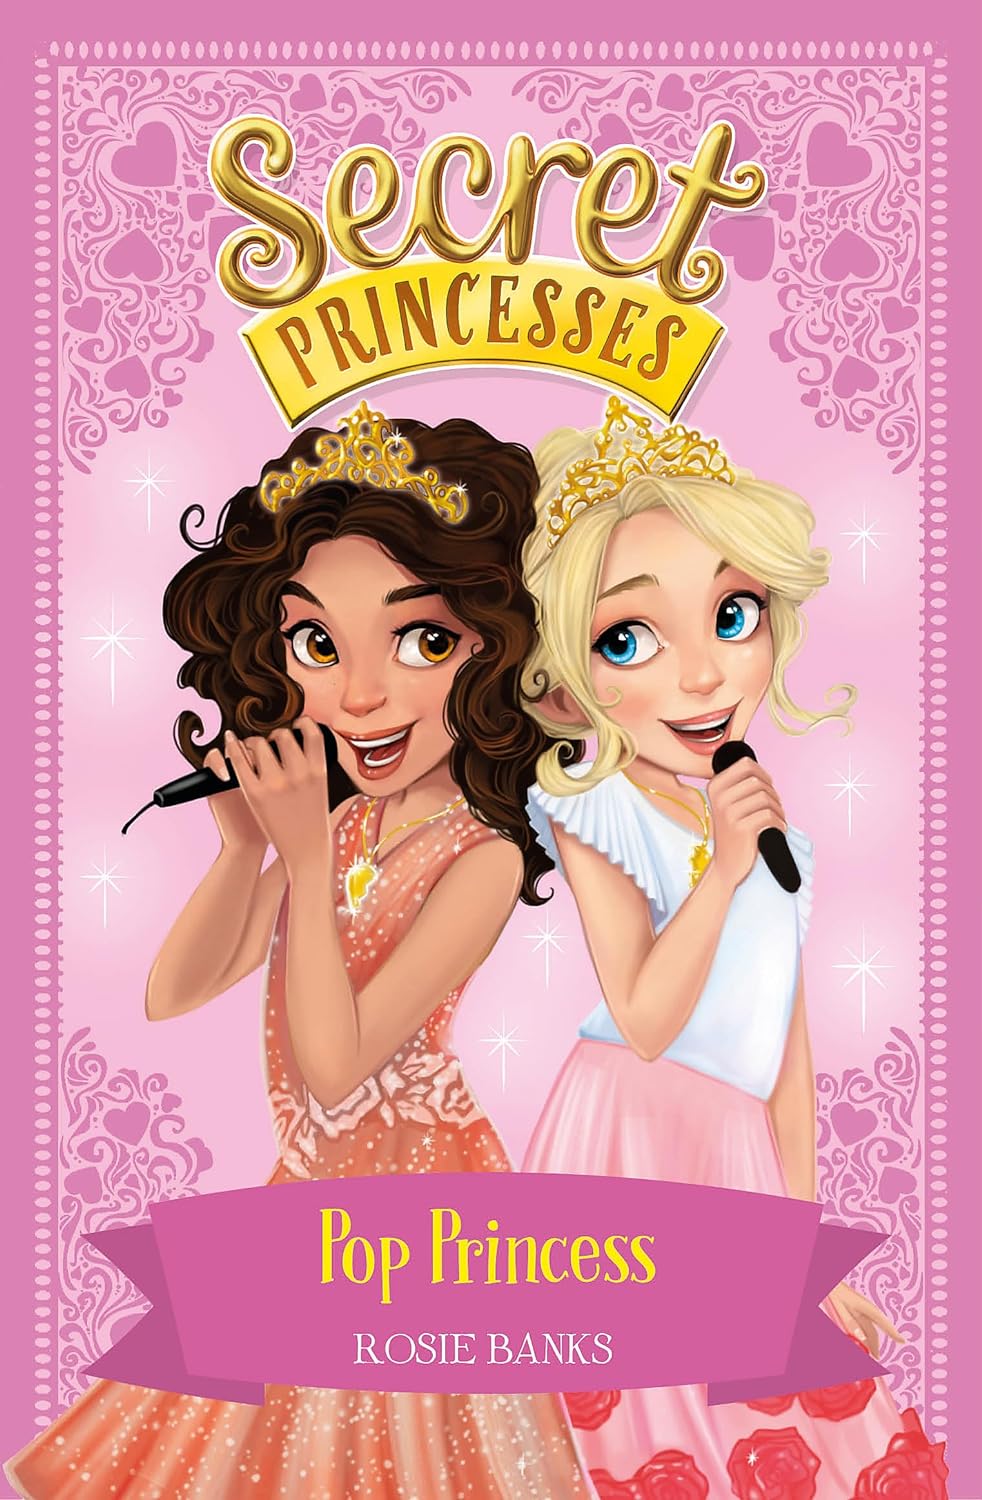 Pop Princess: Book 4 (Secret Princesses)